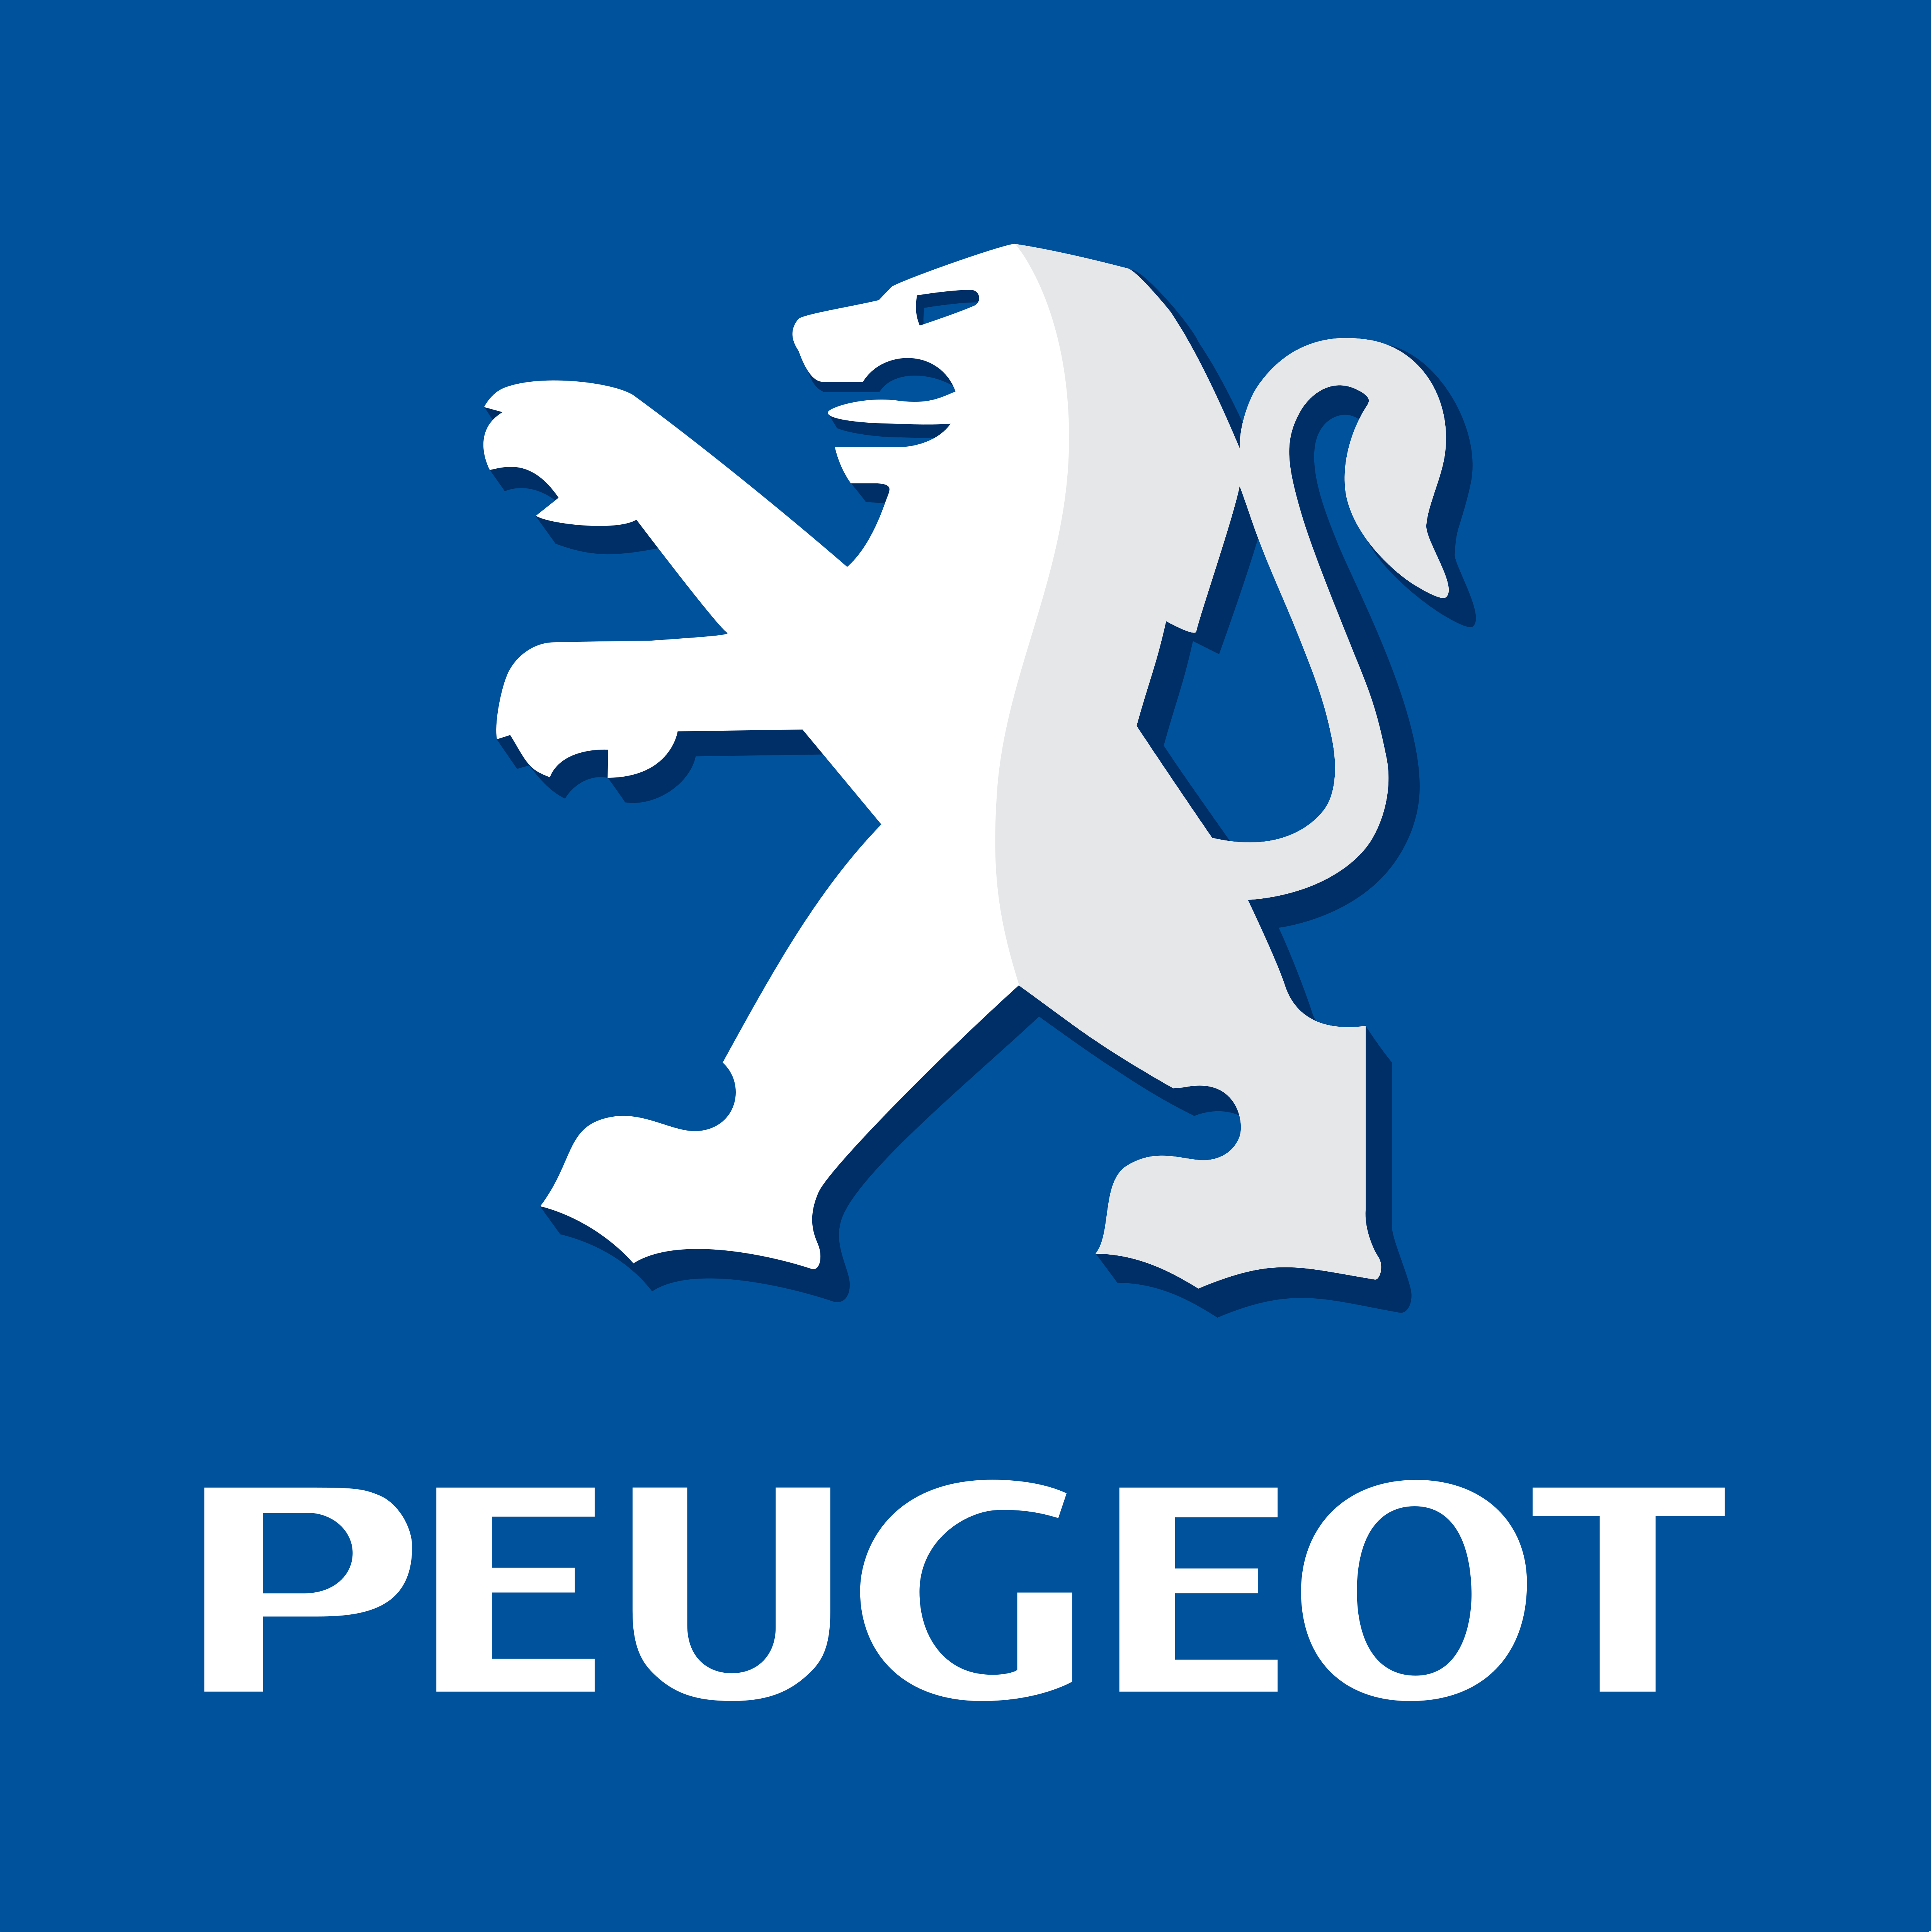 Pergeot logo